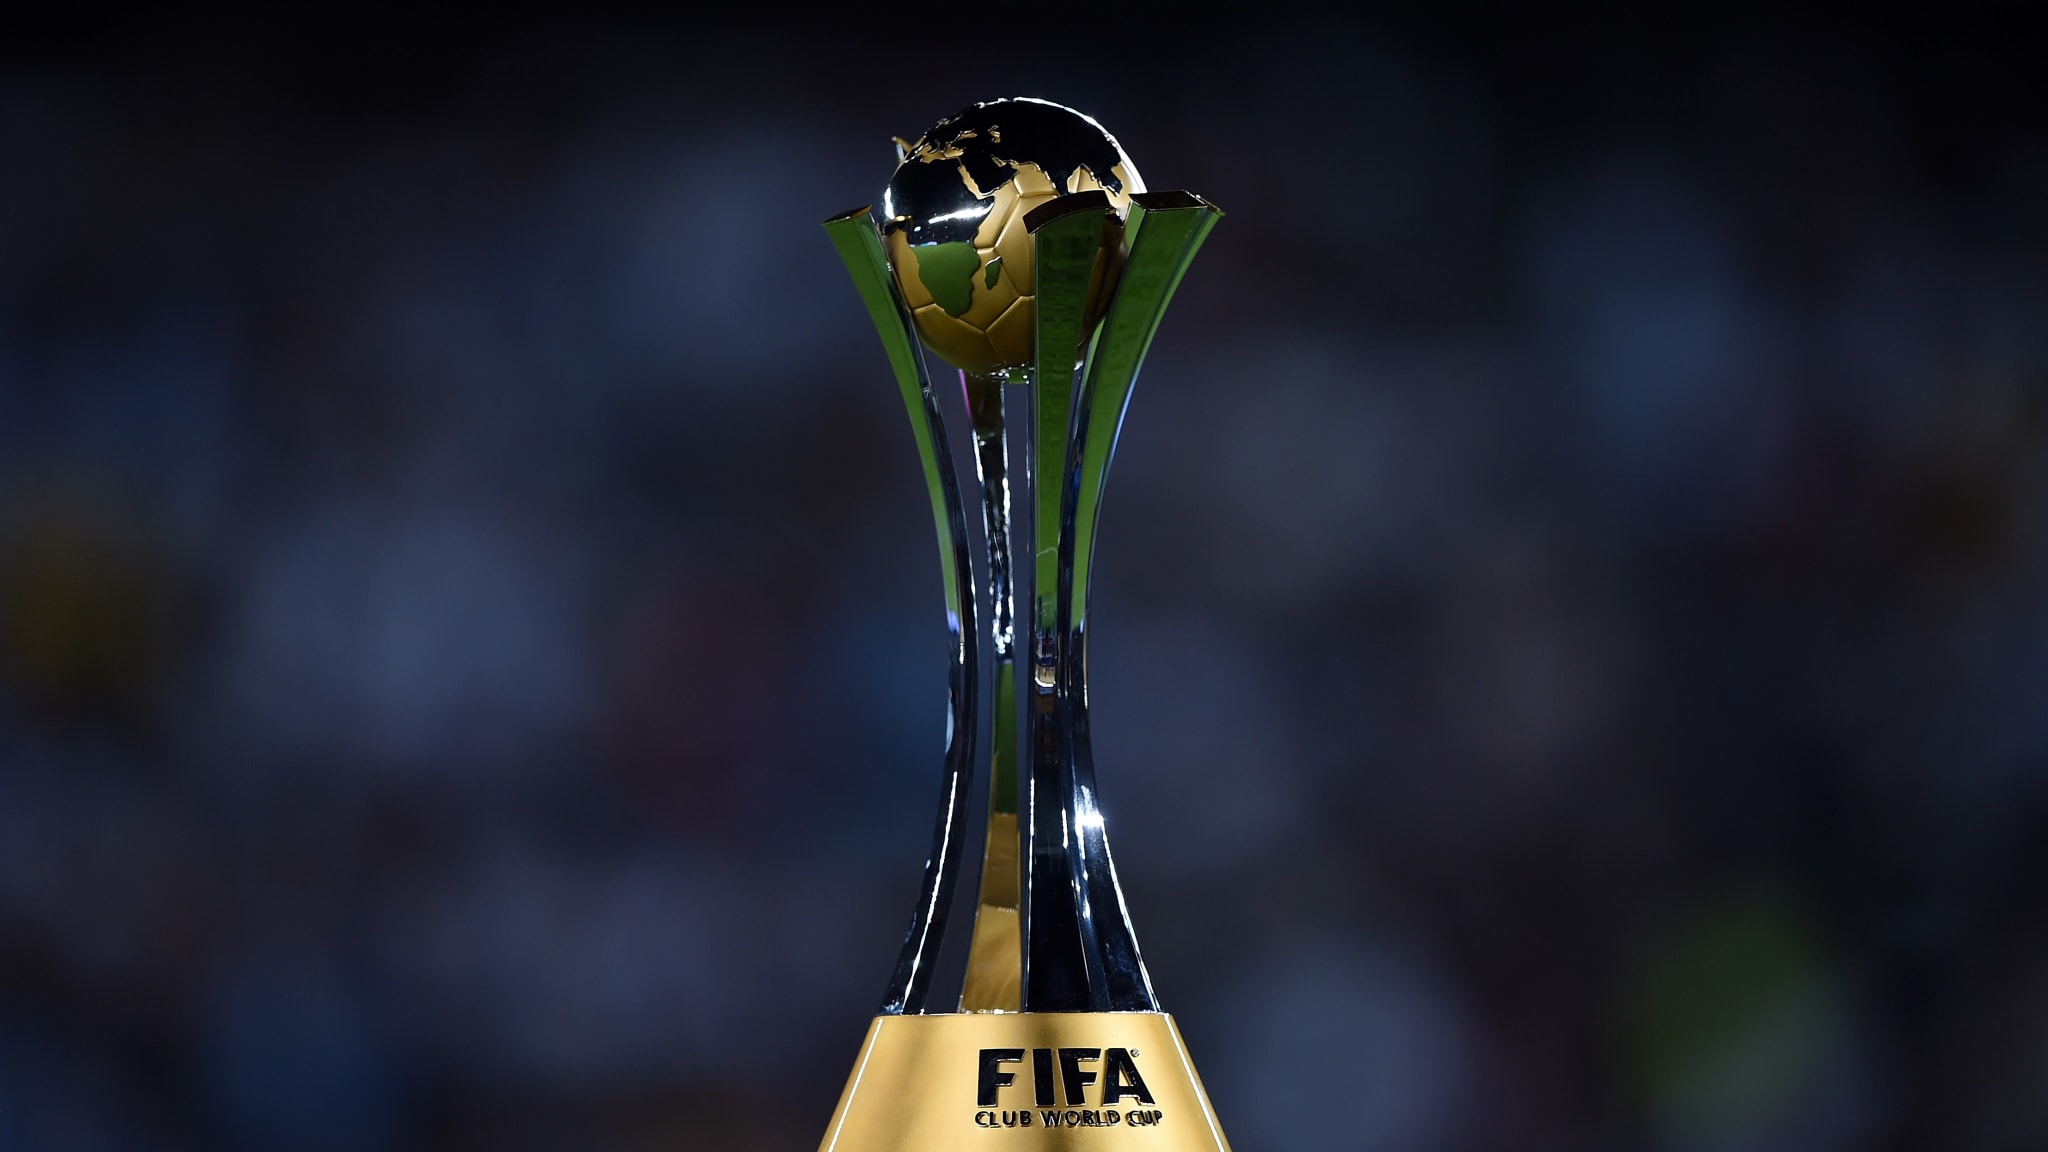 فيفا يعلن اختيار الإمارات لاستضافة كأس العالم للأندية